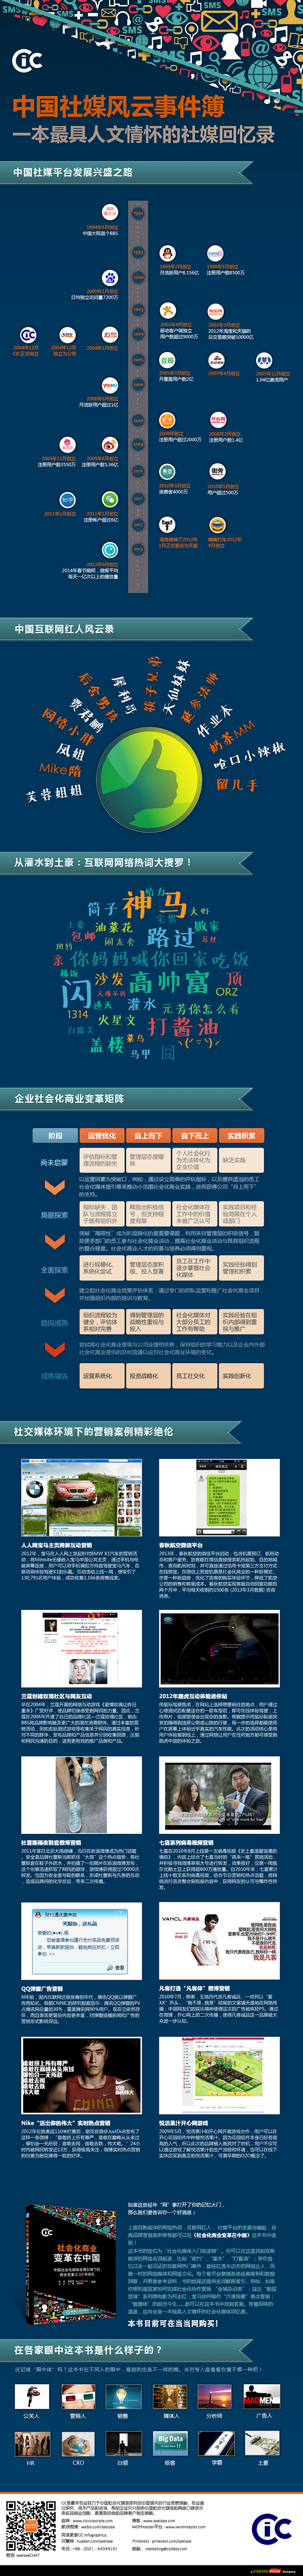 CIC正式推出《社会化商业变革在中国》一...